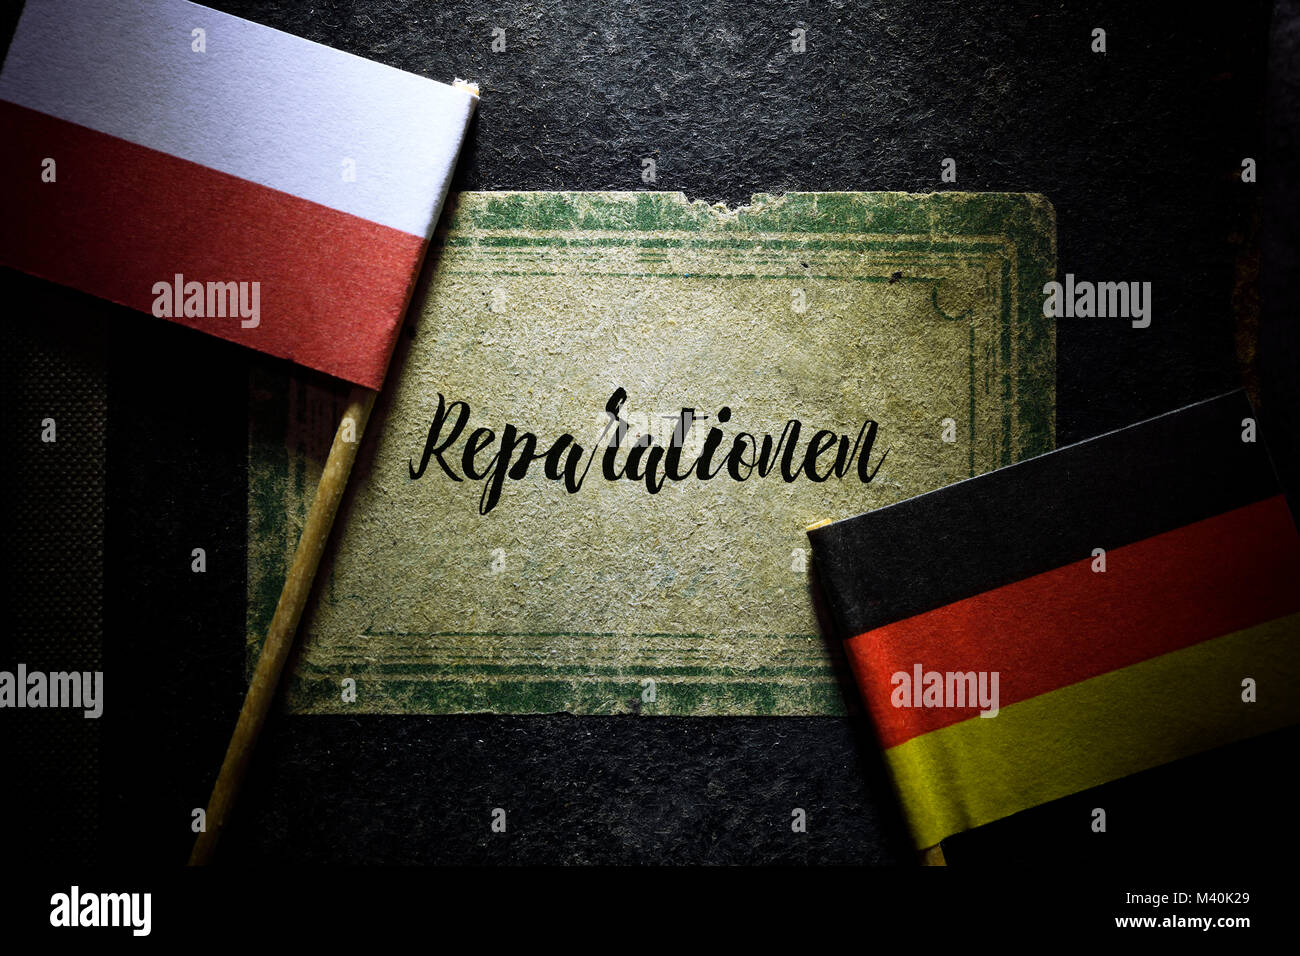 Flags of Germany and Poland and book with the inscription reparations, Fahnen von Deutschland und Polen und Buch mit der Aufschrift Reparationen Stock Photo